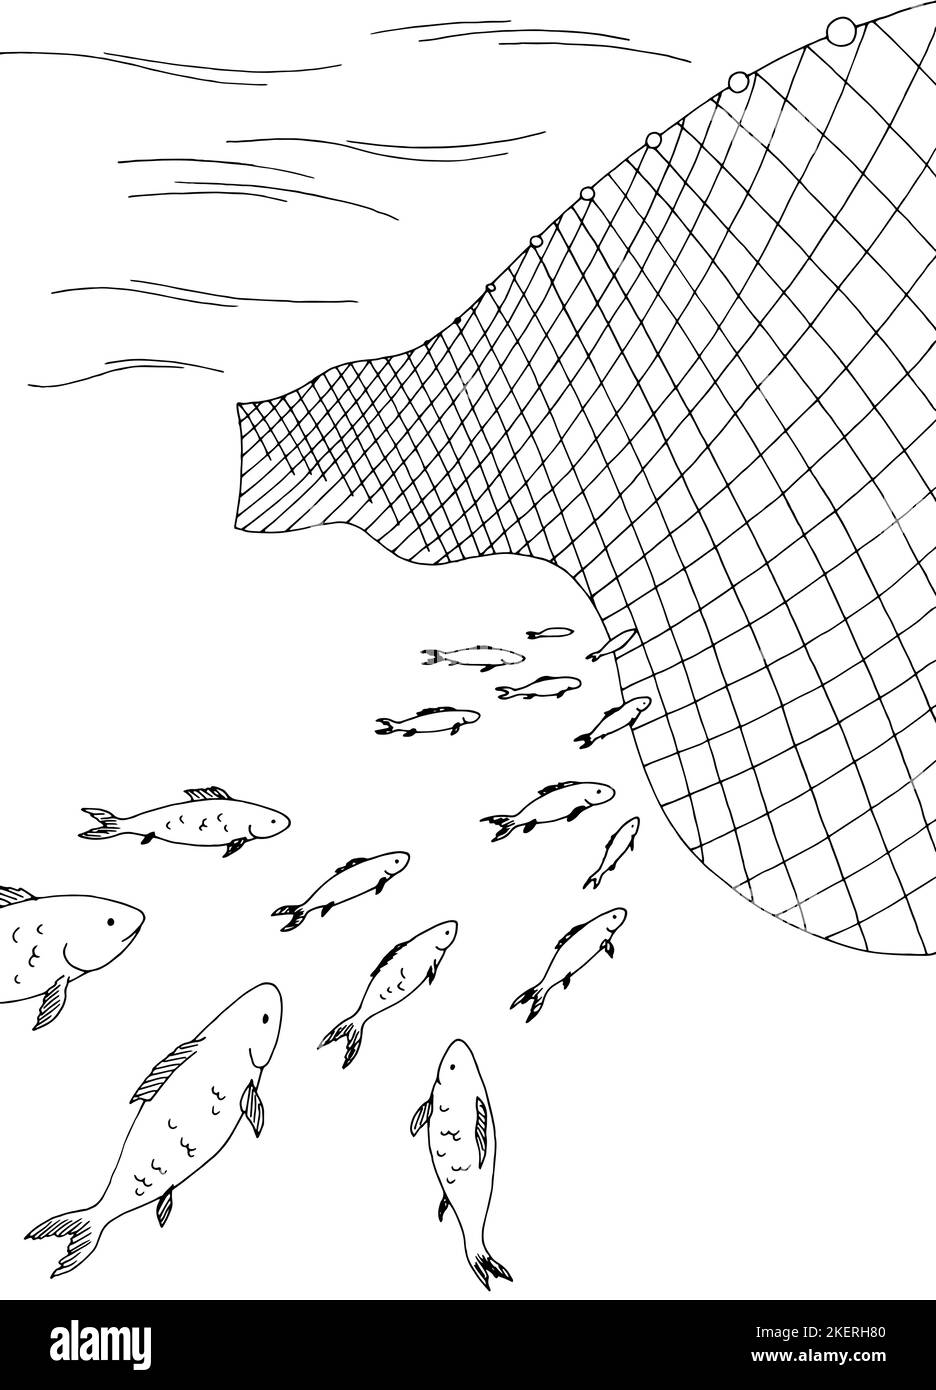 Red de pesca imágenes de stock de arte vectorial